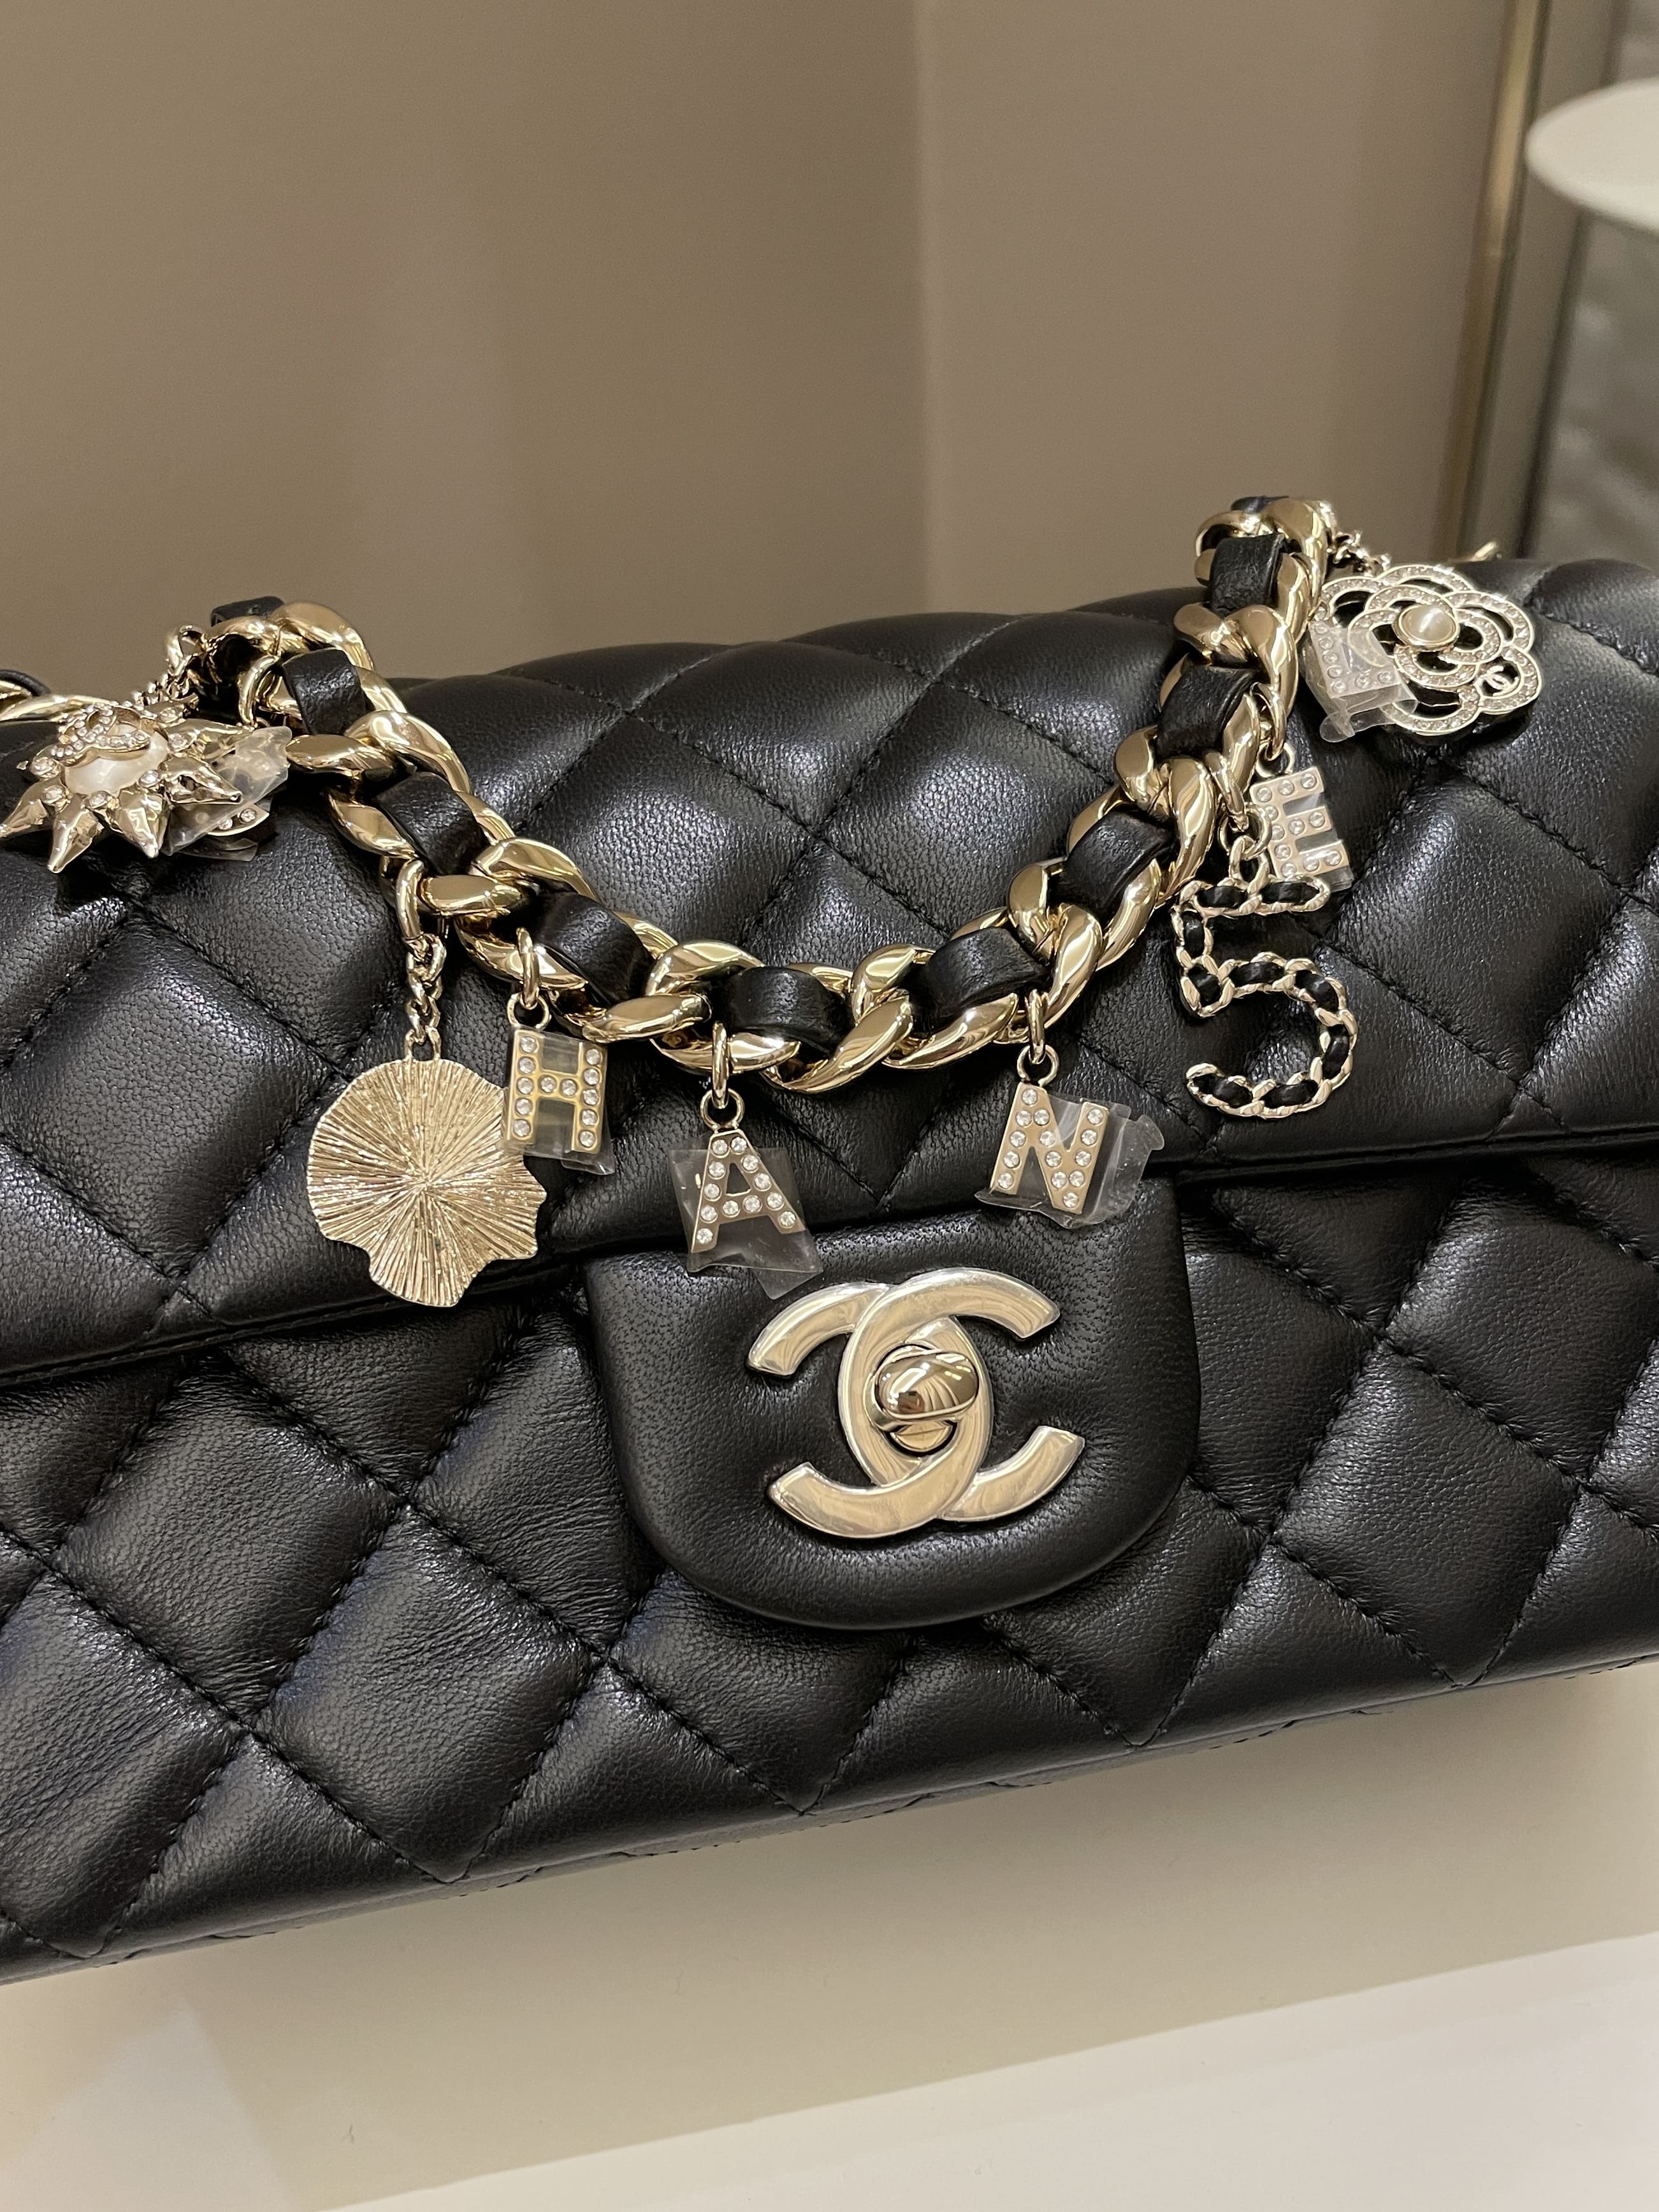 Chanel Coco Charms Bag